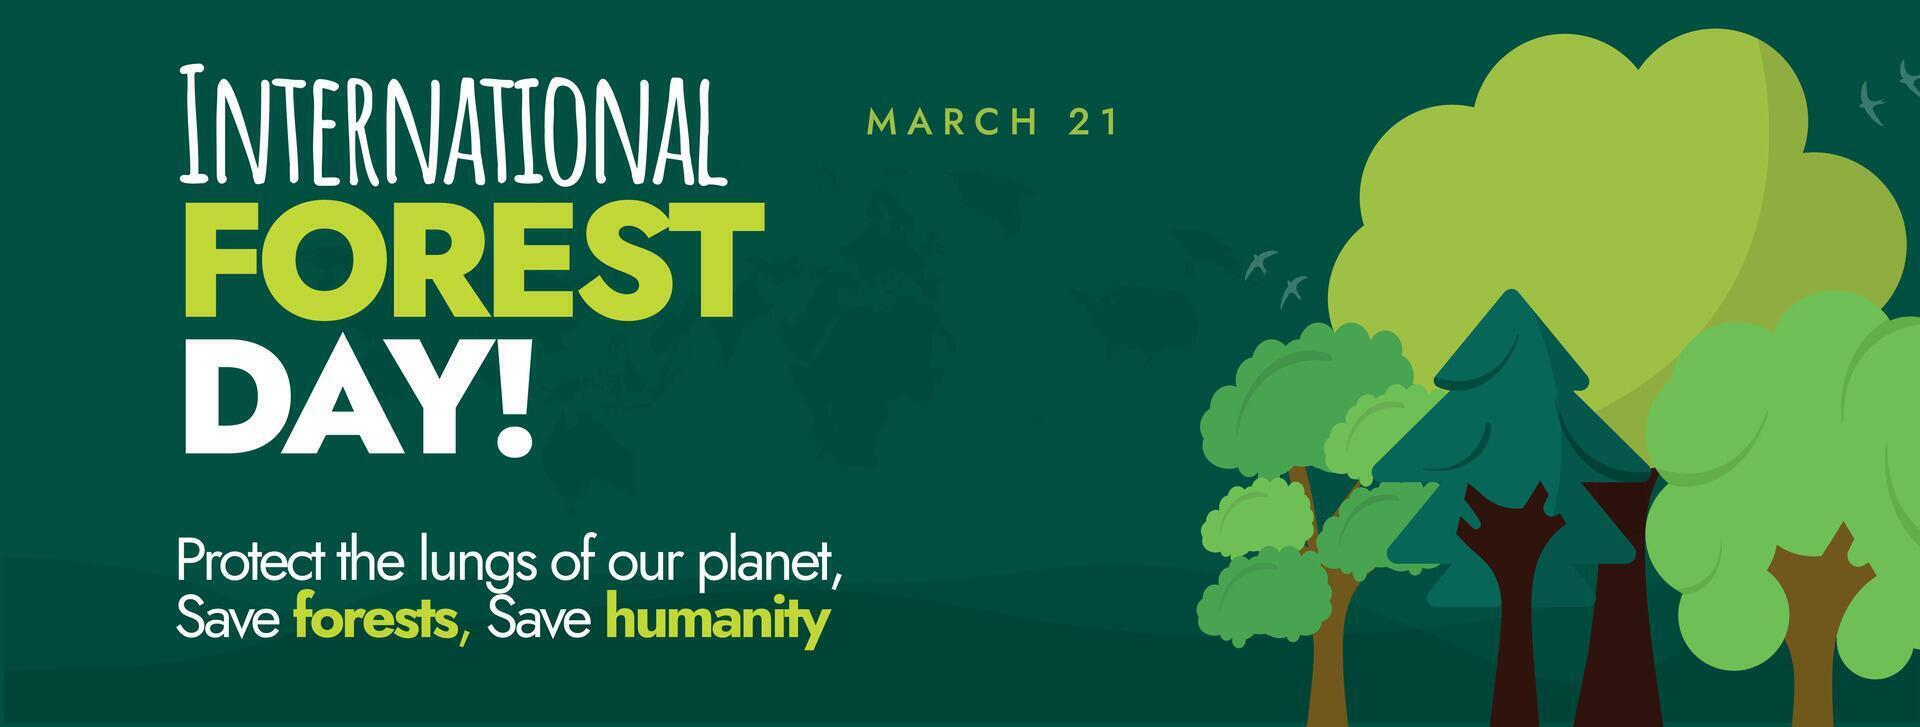 Internationale Woud dag. maart 21, Internationale Woud dag viering Hoes banier in donker groen achtergrond met bomen van verschillend vormen en verschillend groen kleur tinten. bossen en innovatie. vector